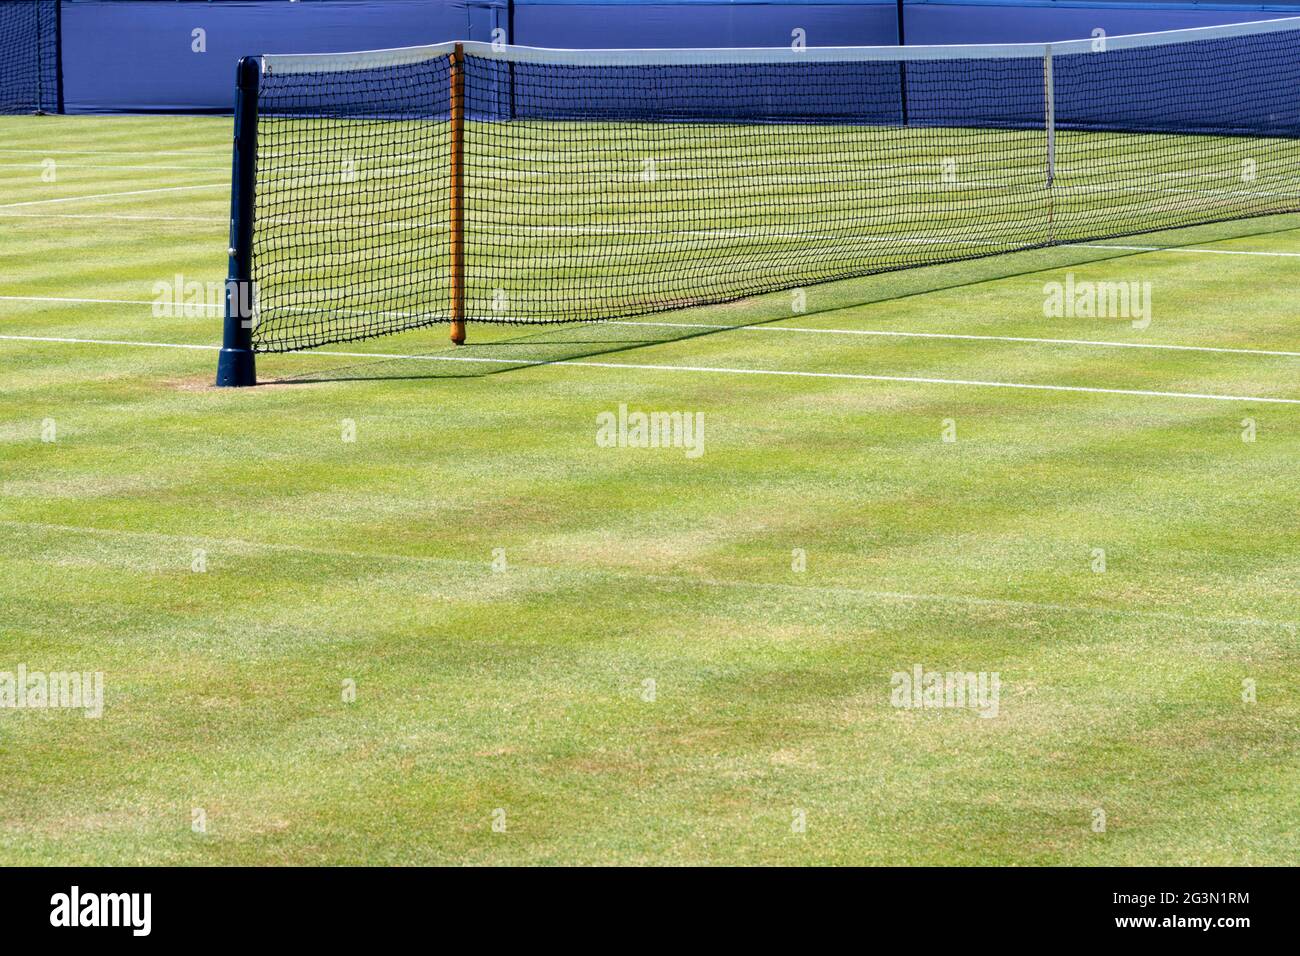 Red de tenis en la pista de hierba bajo el sol Foto de stock